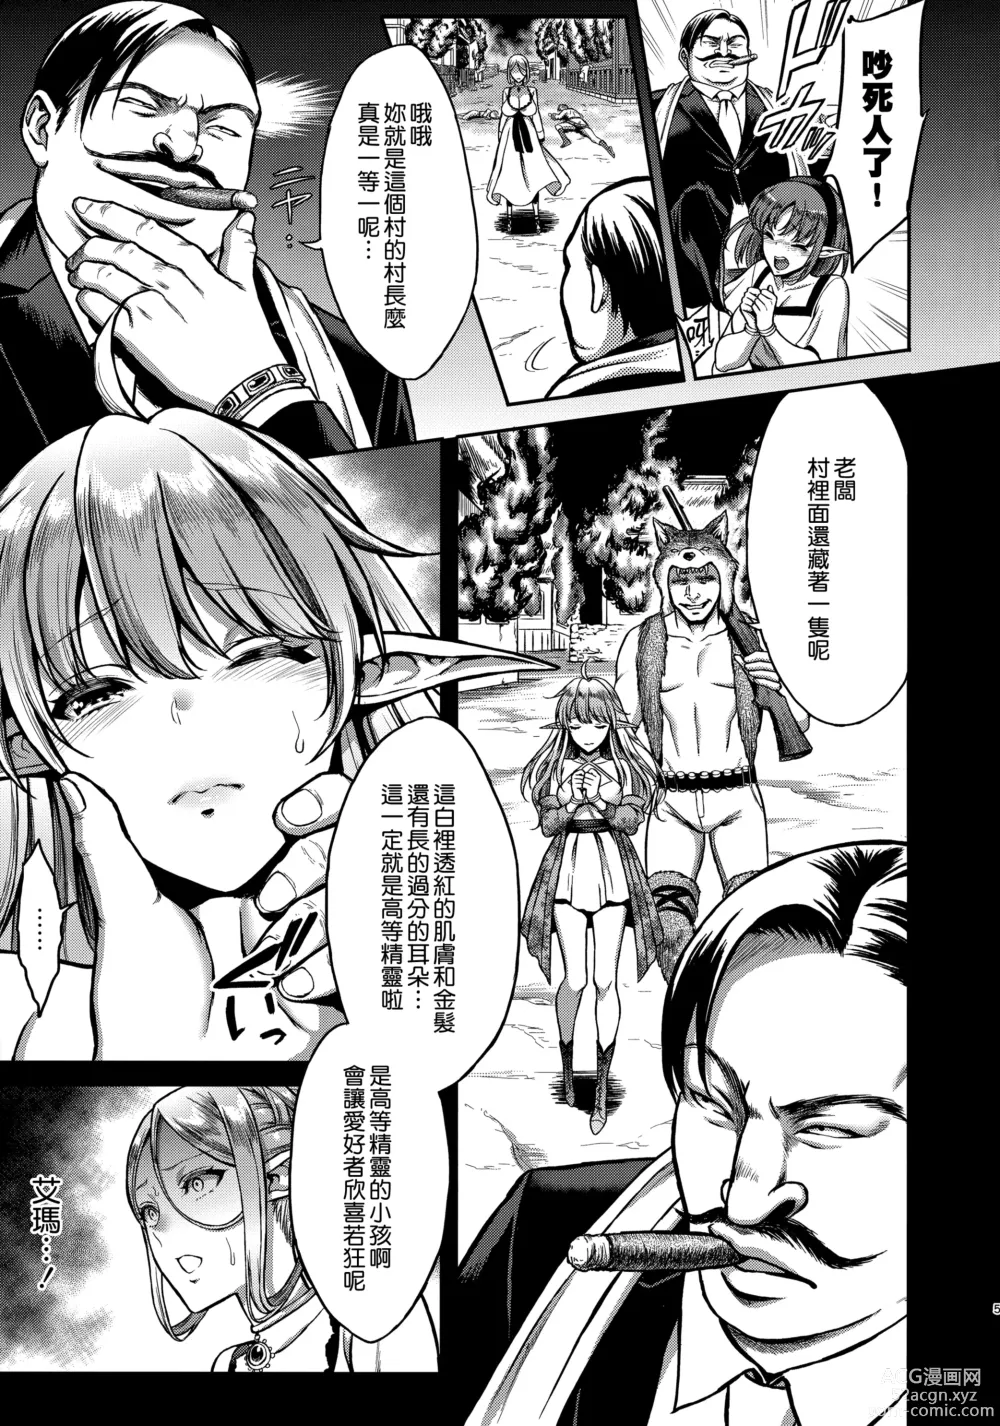 Page 4 of doujinshi Tasogare no Shou Elf 5